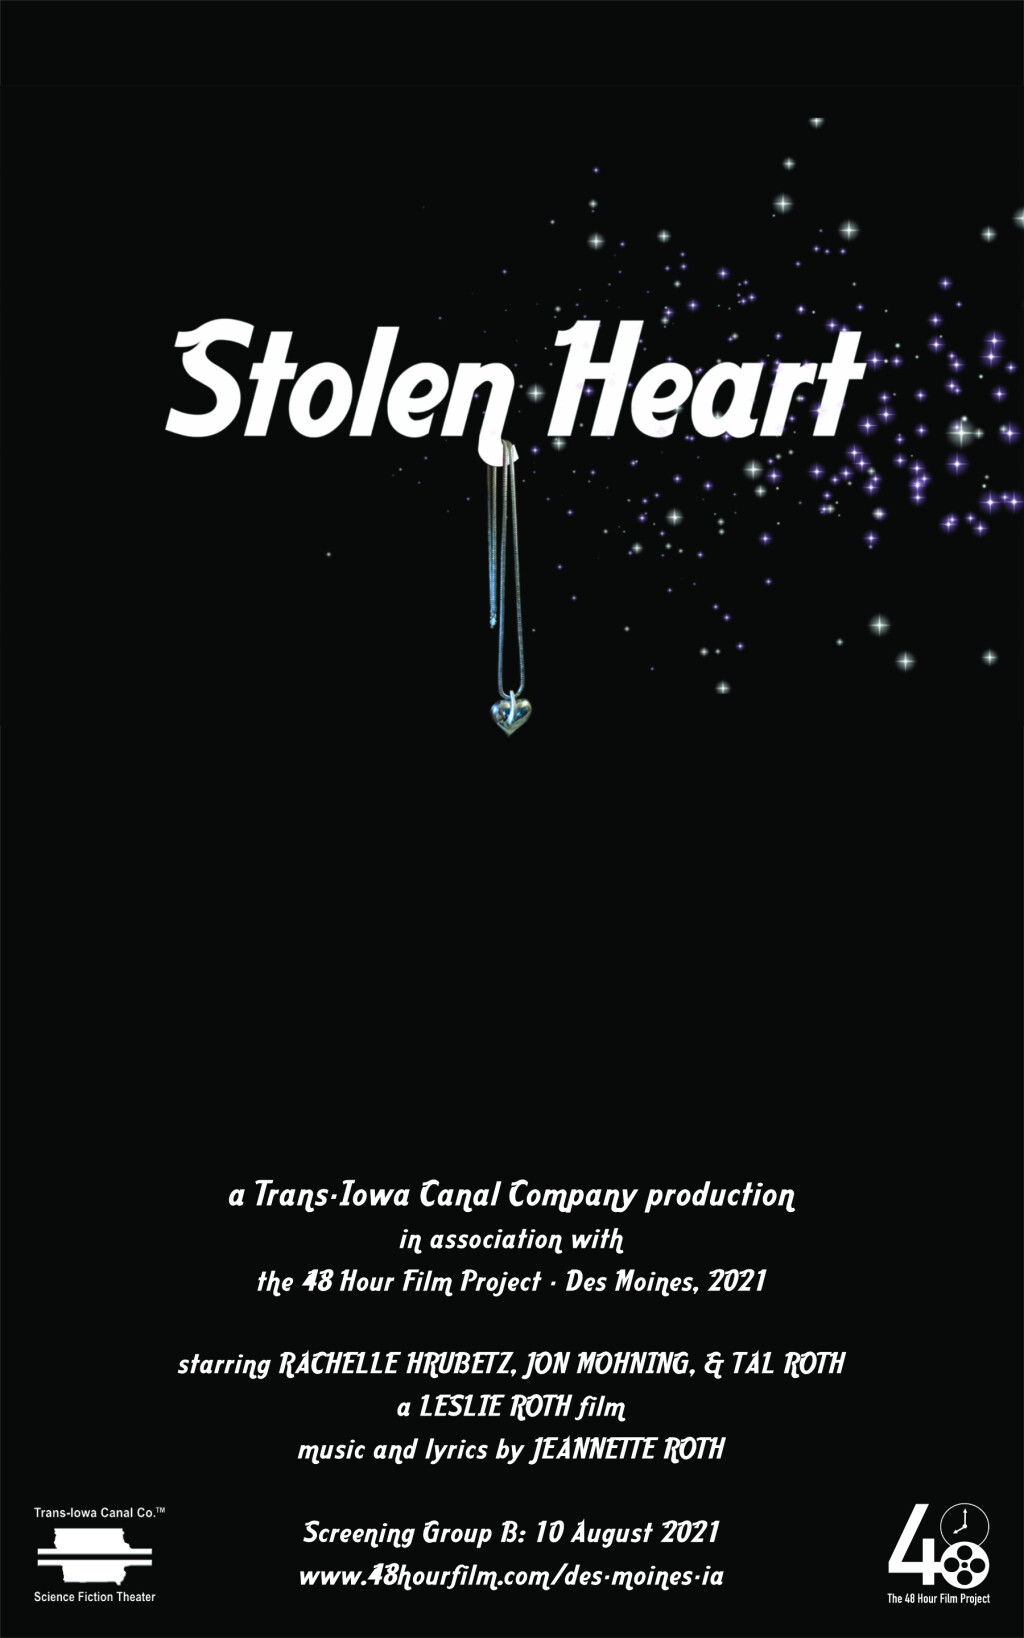 Filmposter for Stolen Heart